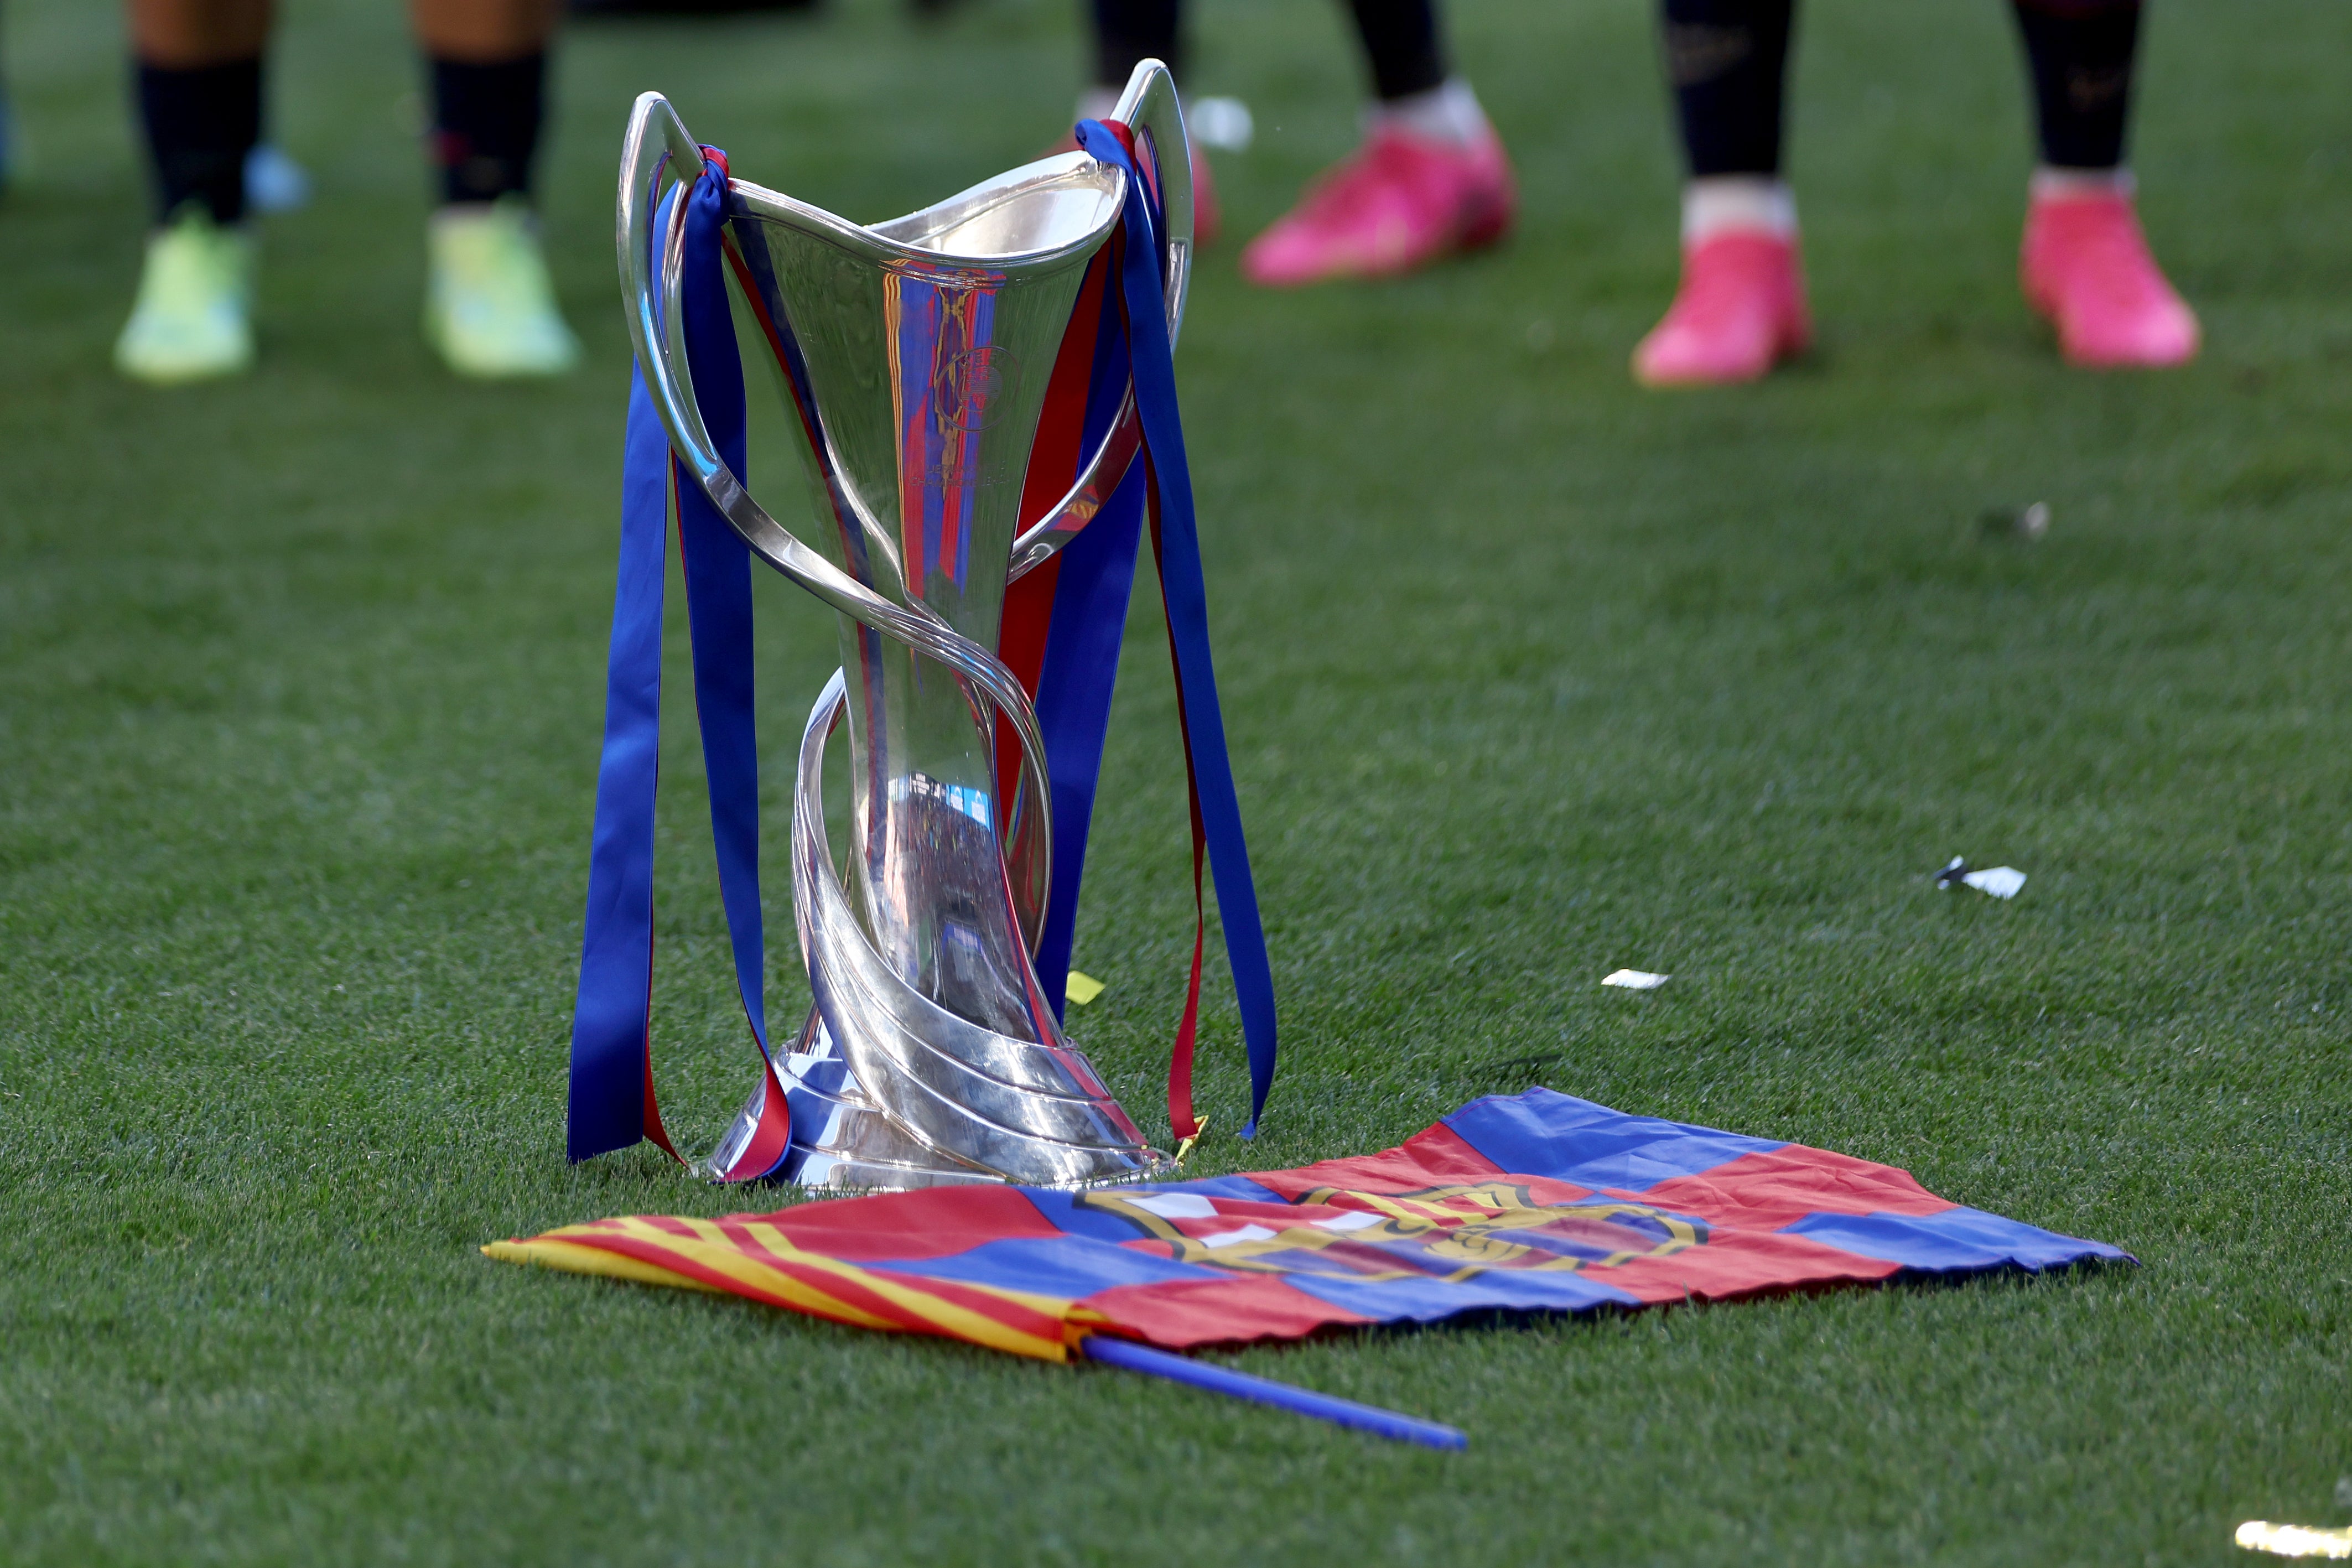 The Uefa Women’s Champions League trophy